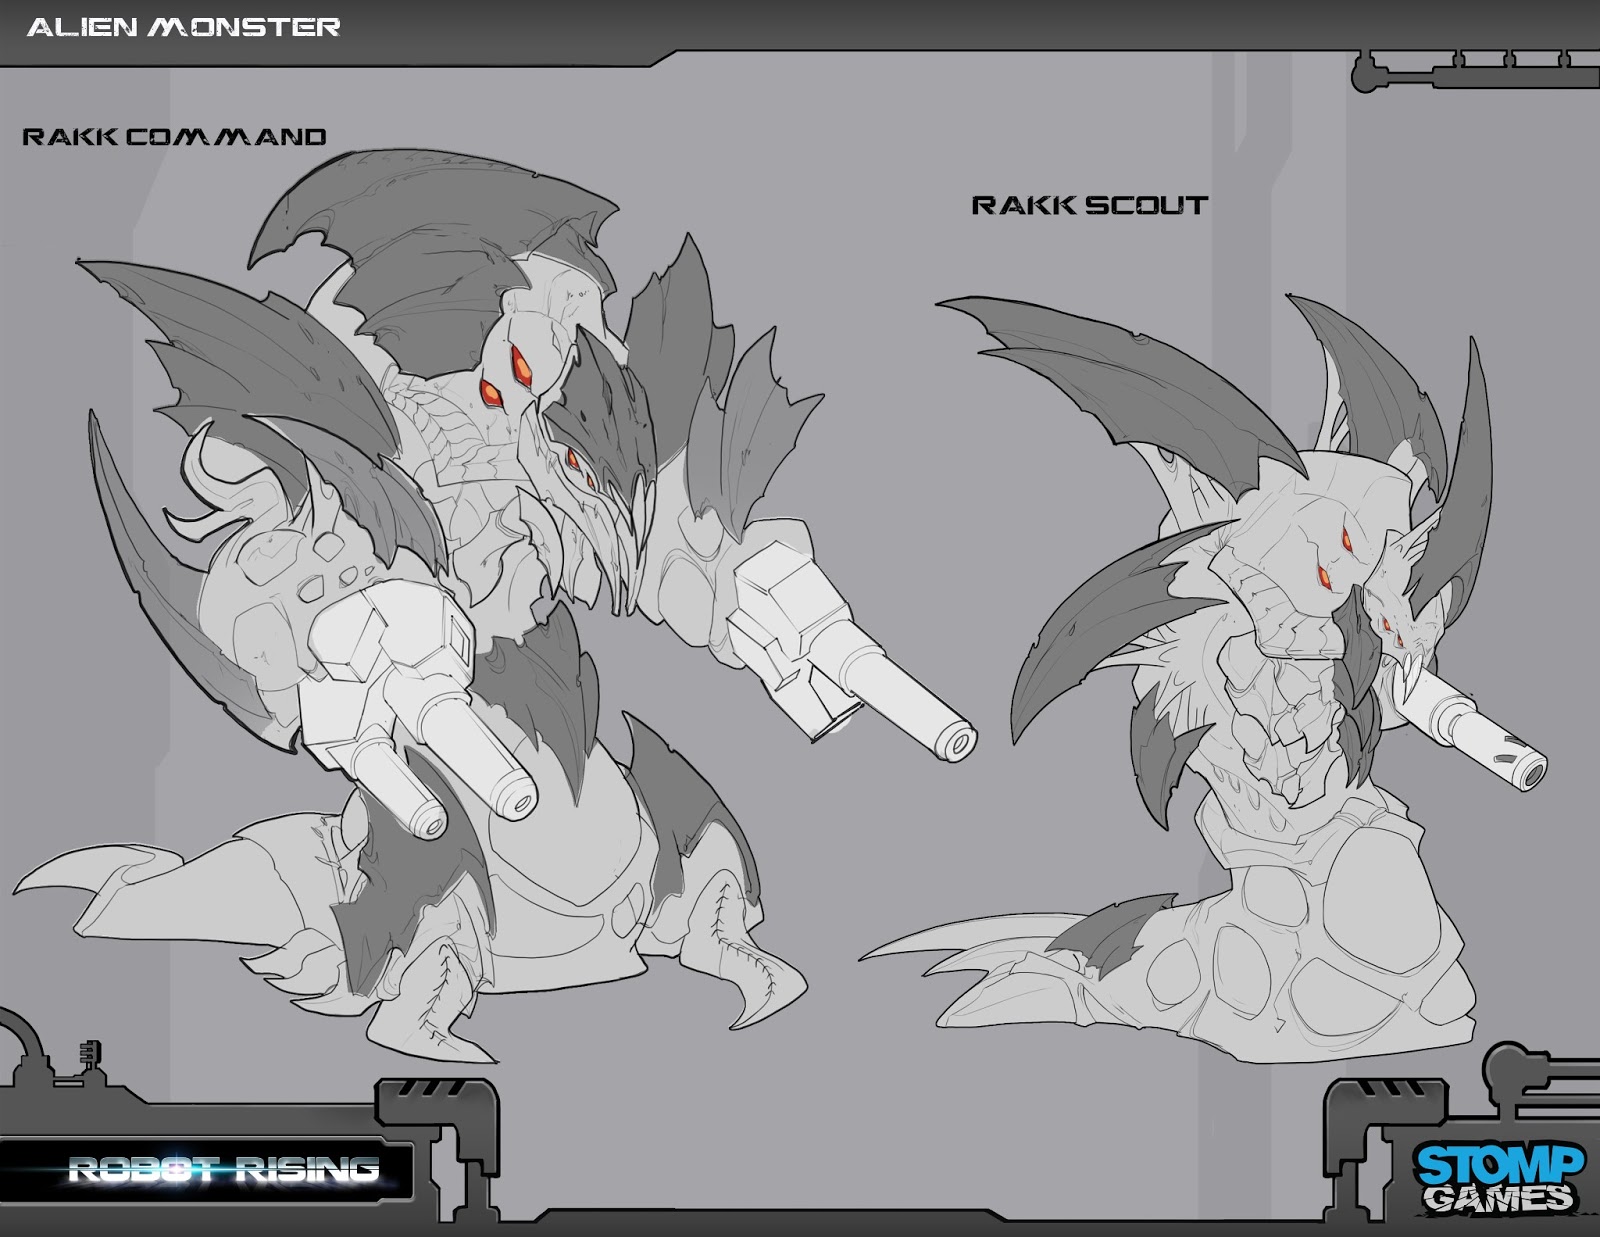 Alien_Monster_RakkCommandRakkScout_Concept_01.jpg